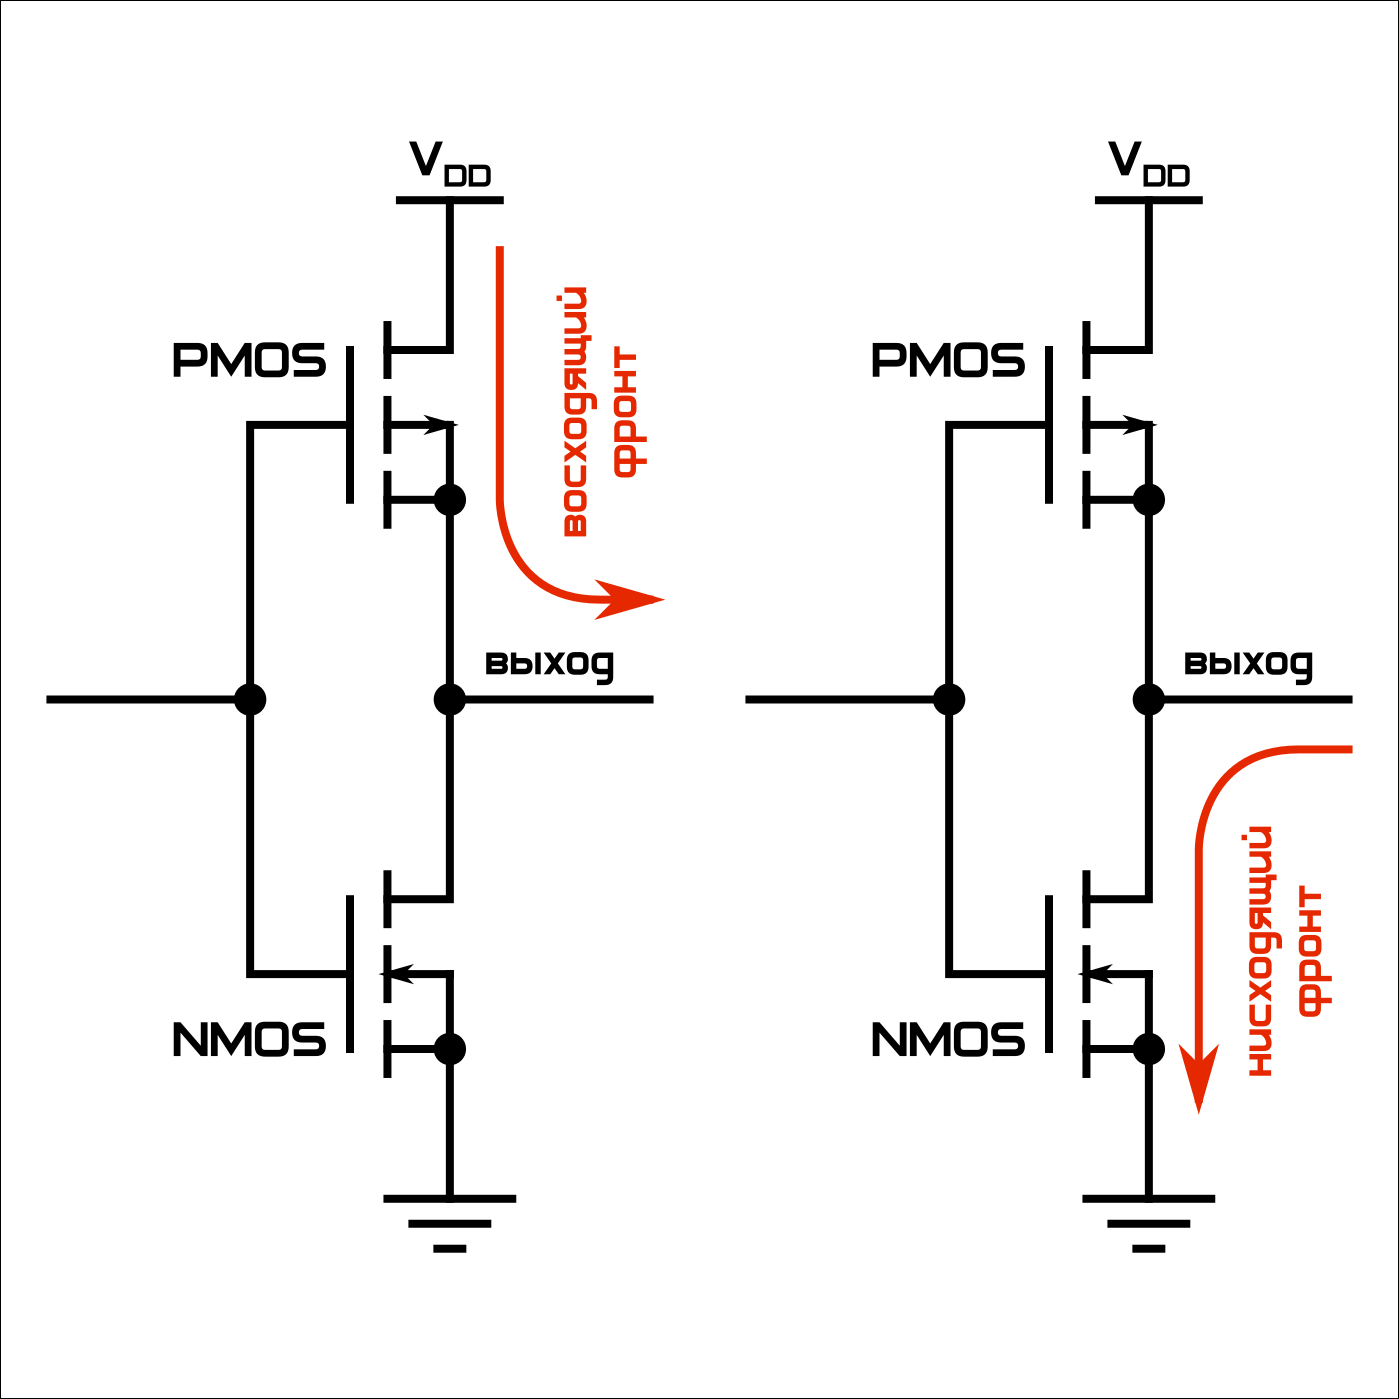 Направление тока через транзисторы выходного буфера при передаче логической единицы и логического нуля